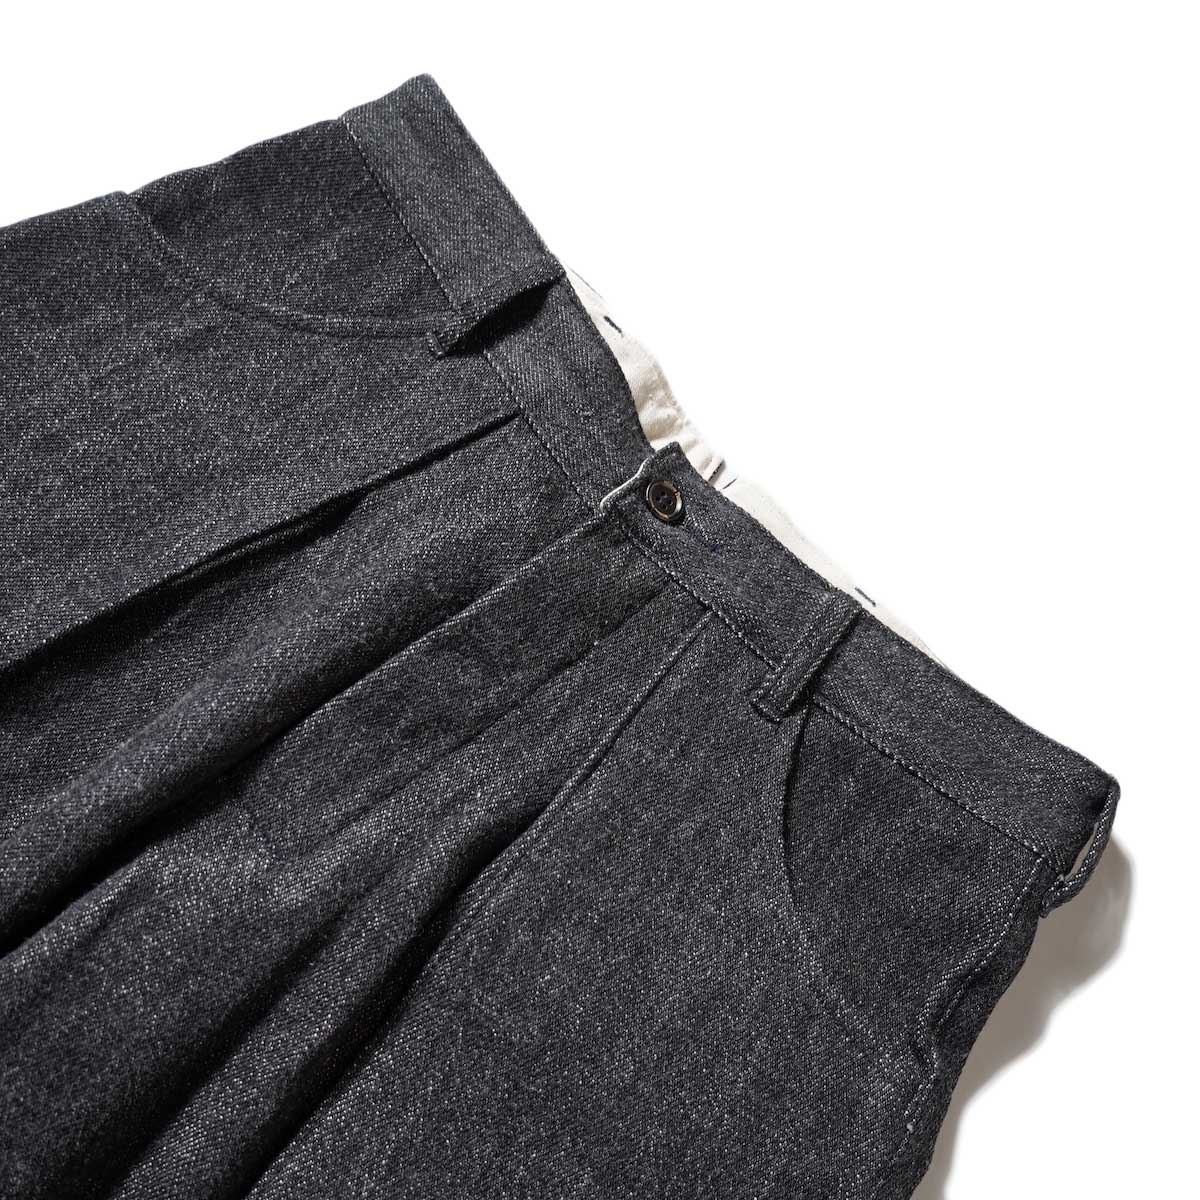 Willow Pants / P-001S - Denim Short Pants (Black Denim) ウエスト